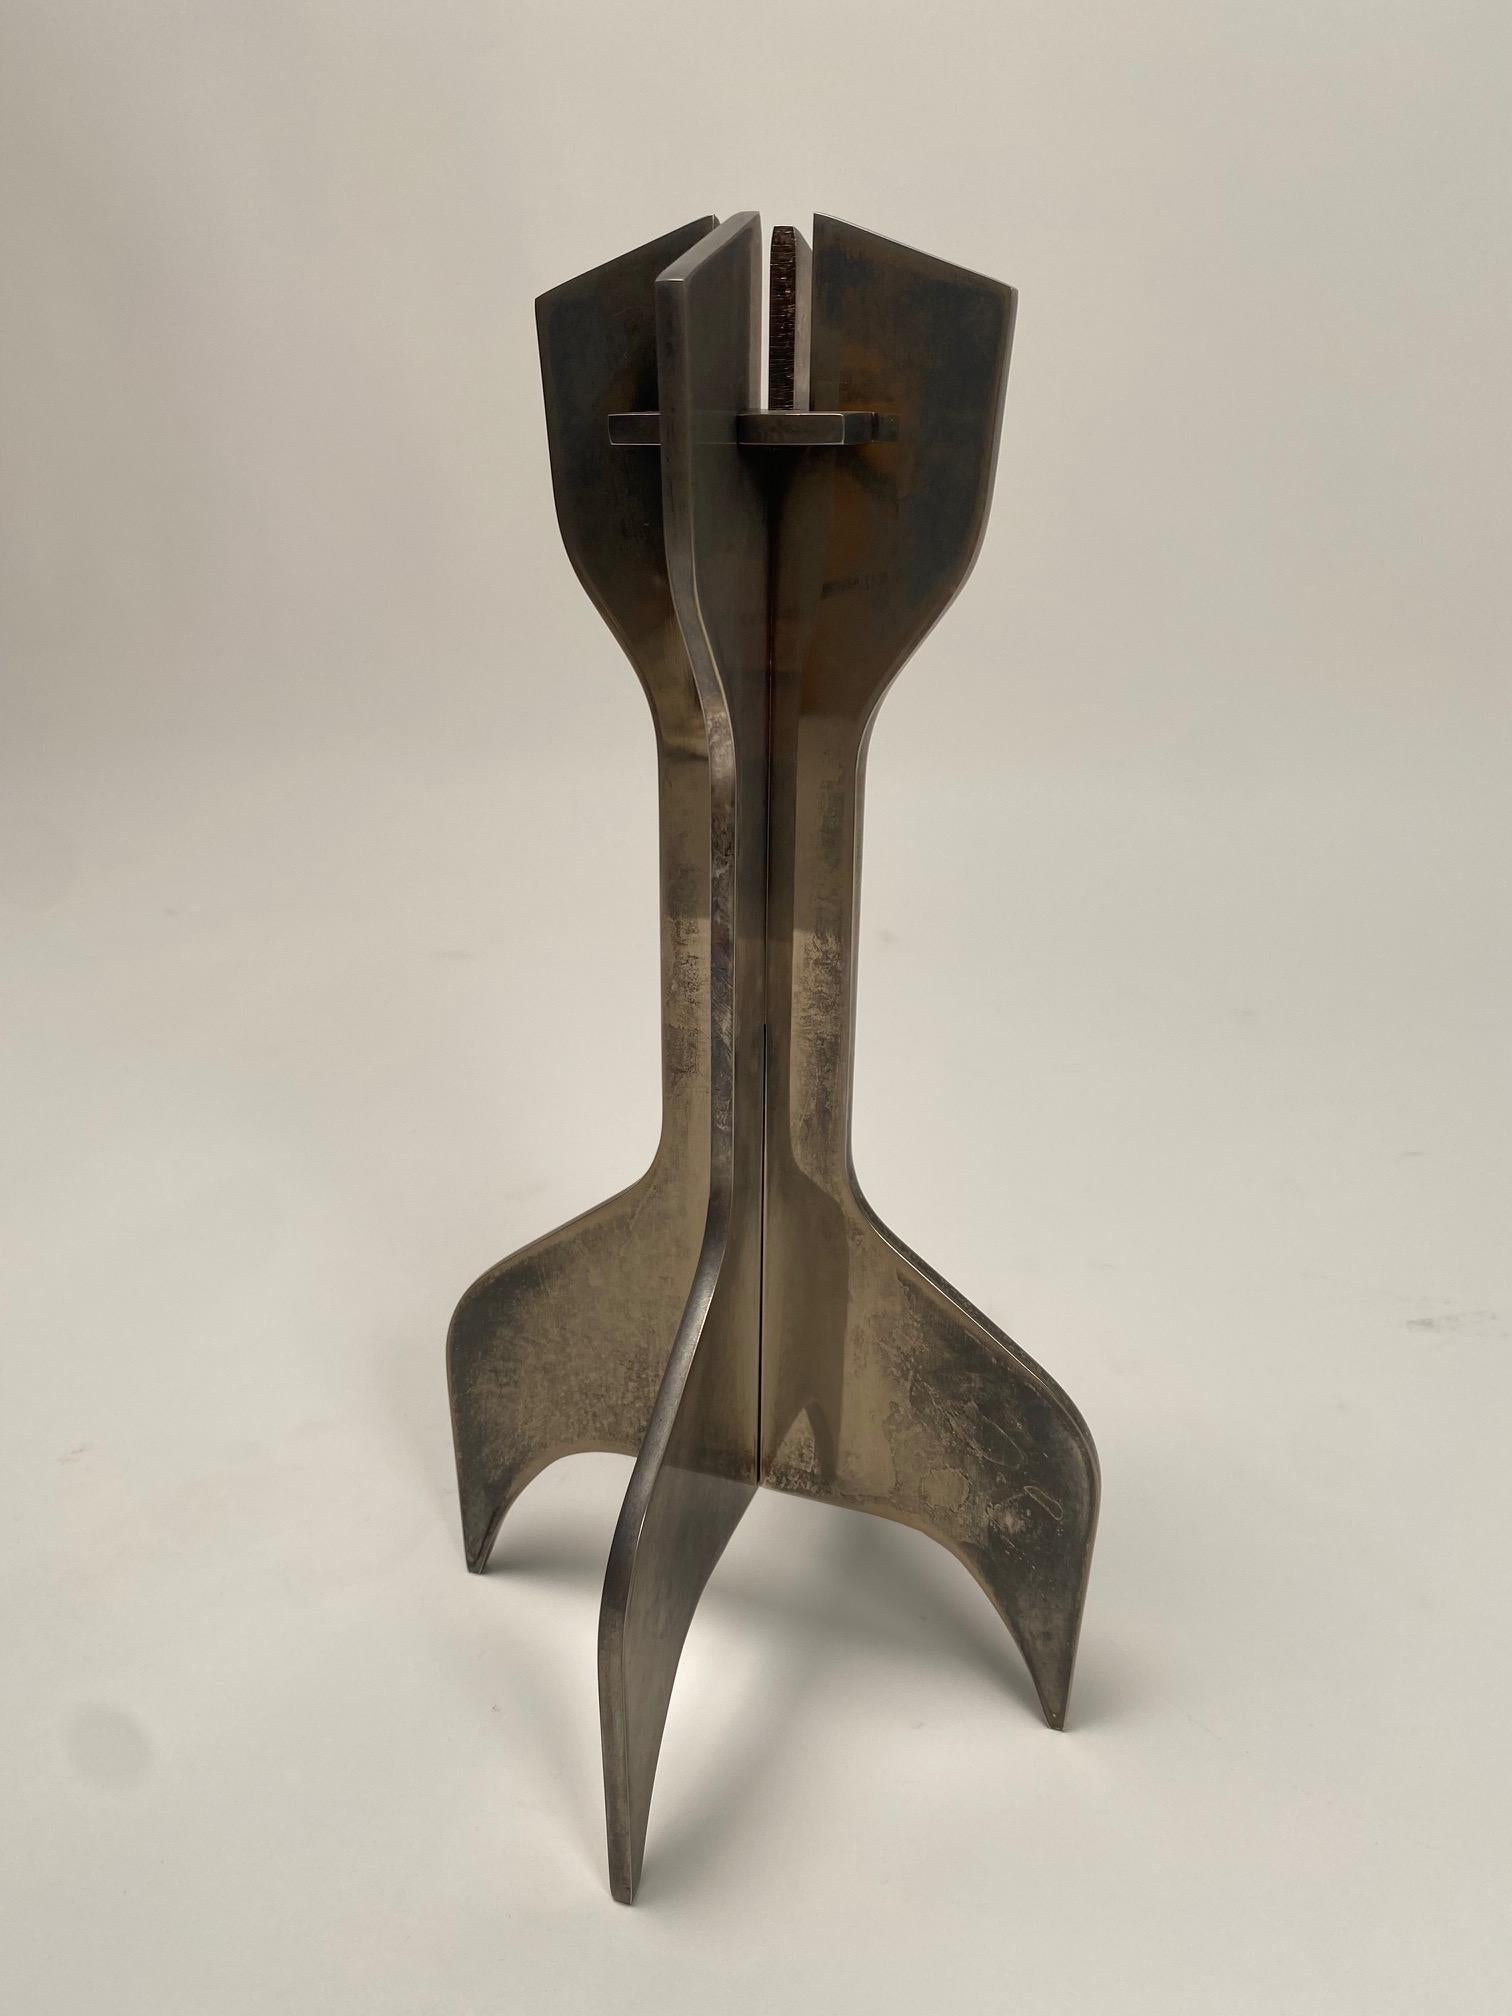 Satz von zwei italienischen Metallskulpturen der Jahrhundertmitte, entworfen von Marcel Breuer, Kerzenhalter von Gavina mit zerlegbaren Elementen aus verchromtem Stahl.

Der Kerzenhalter besteht aus drei ineinander greifenden Elementen.

Es handelt